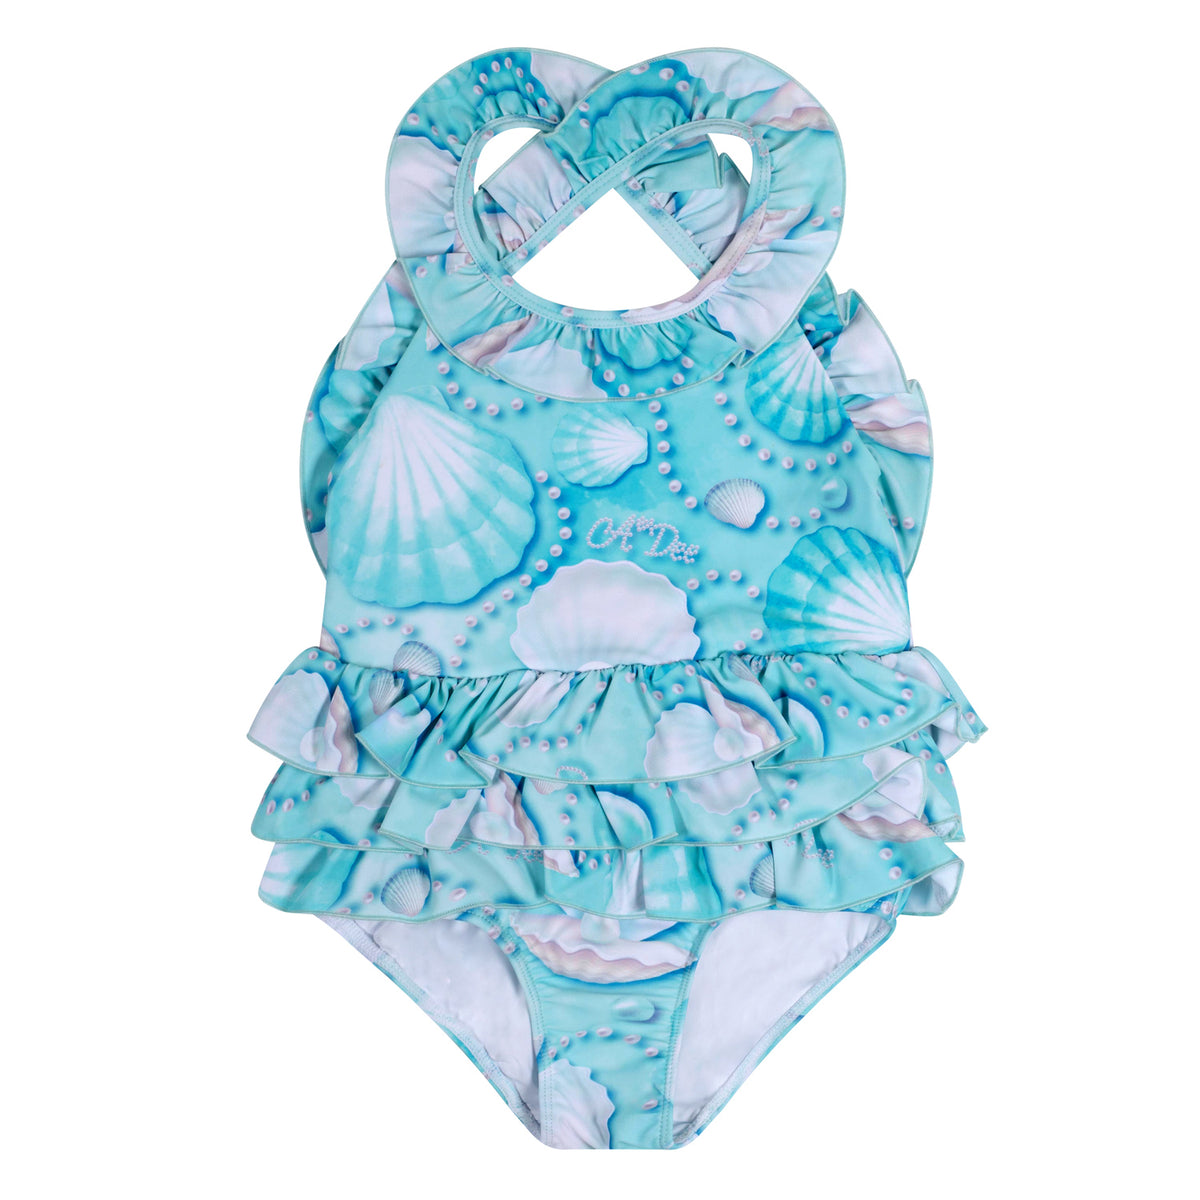 A Dee Girls 'Ariel' Pearl Print Swimsuit